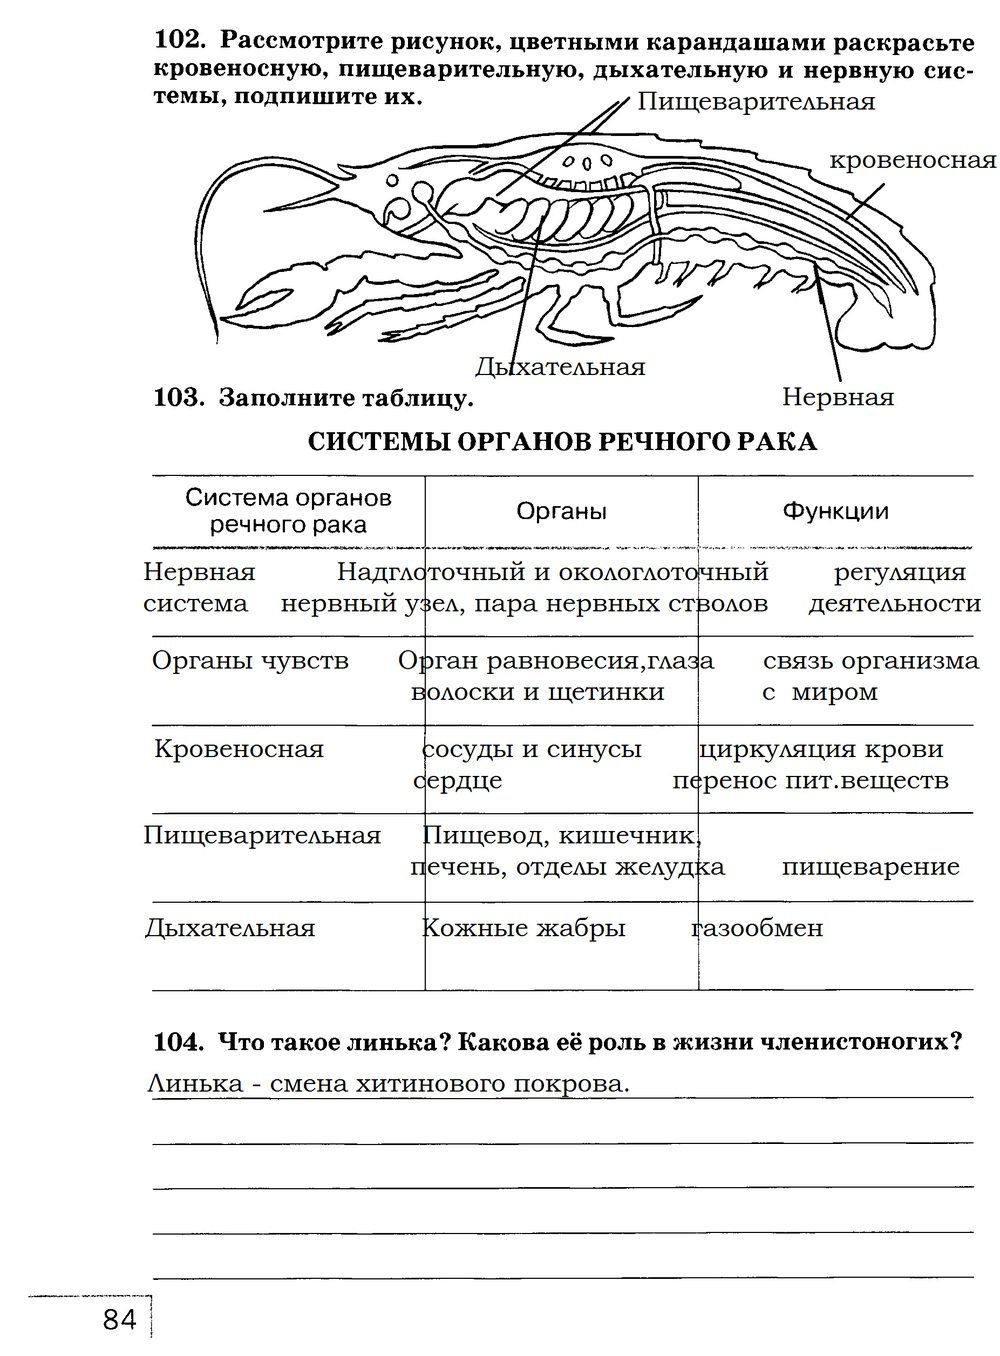 гдз 7 класс рабочая тетрадь страница 84 биология Захаров, Сонин